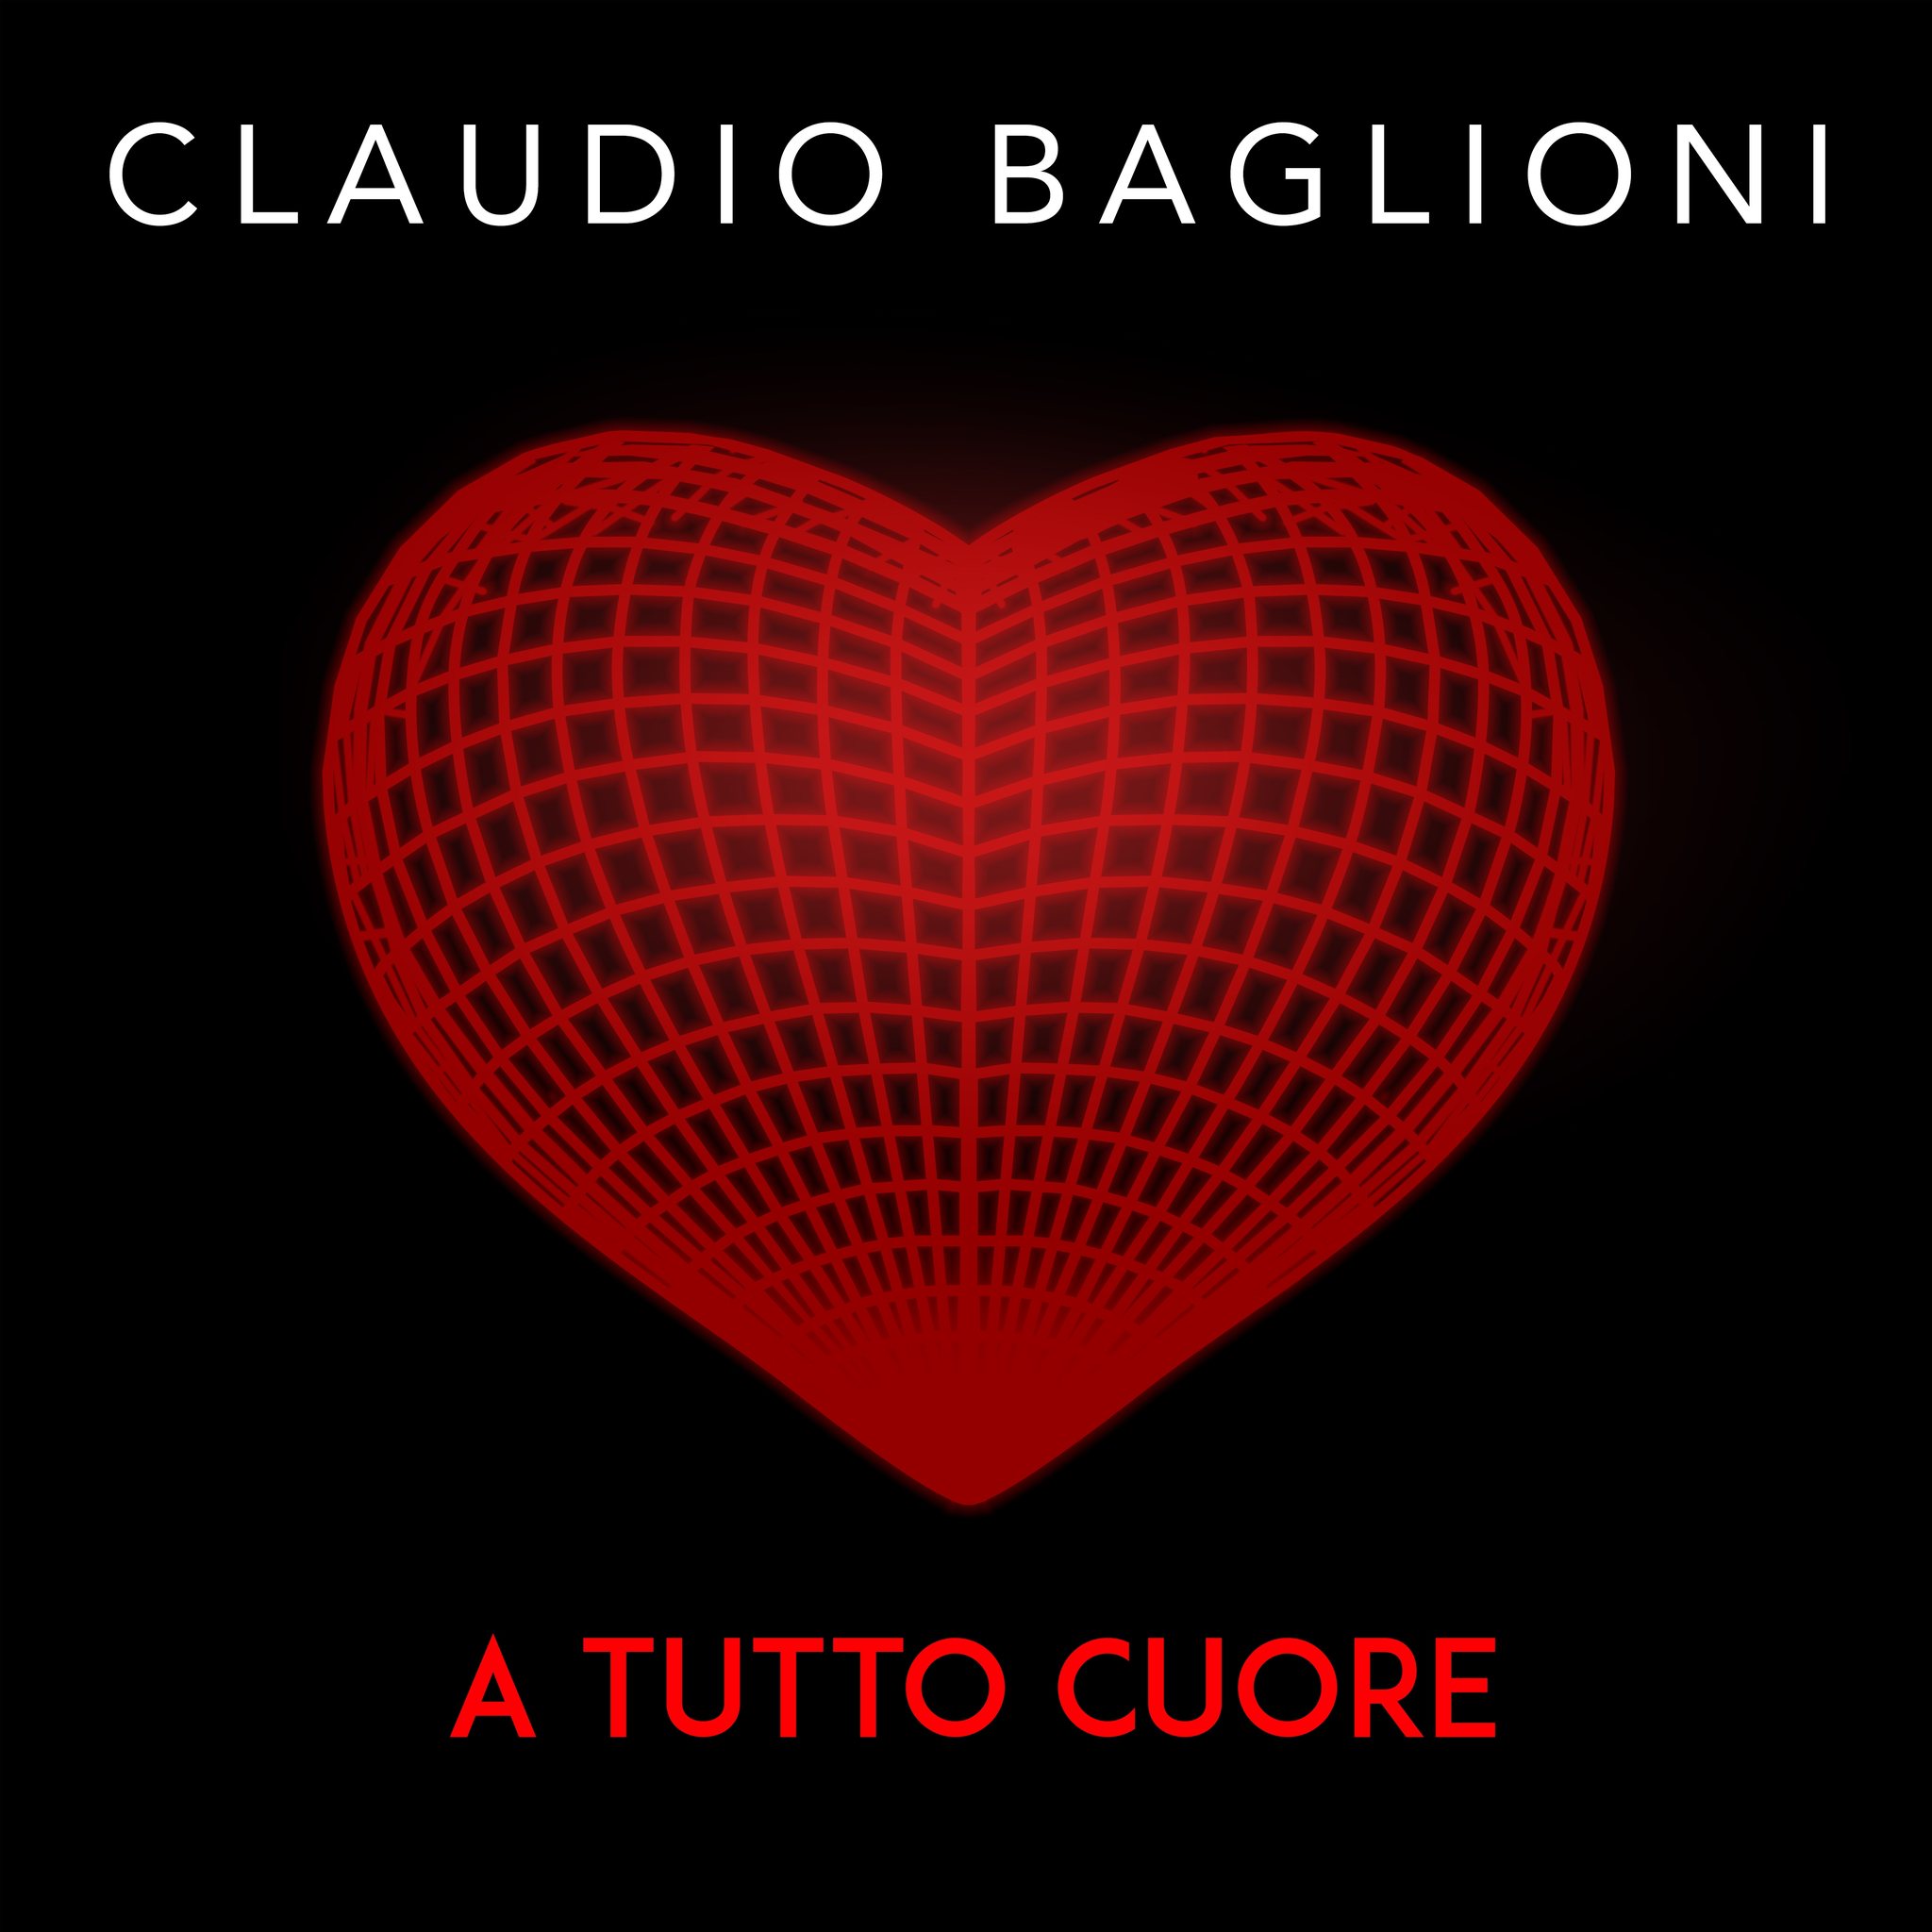 A Tutto Cuore - Claudio Baglioni - Testo e Significato